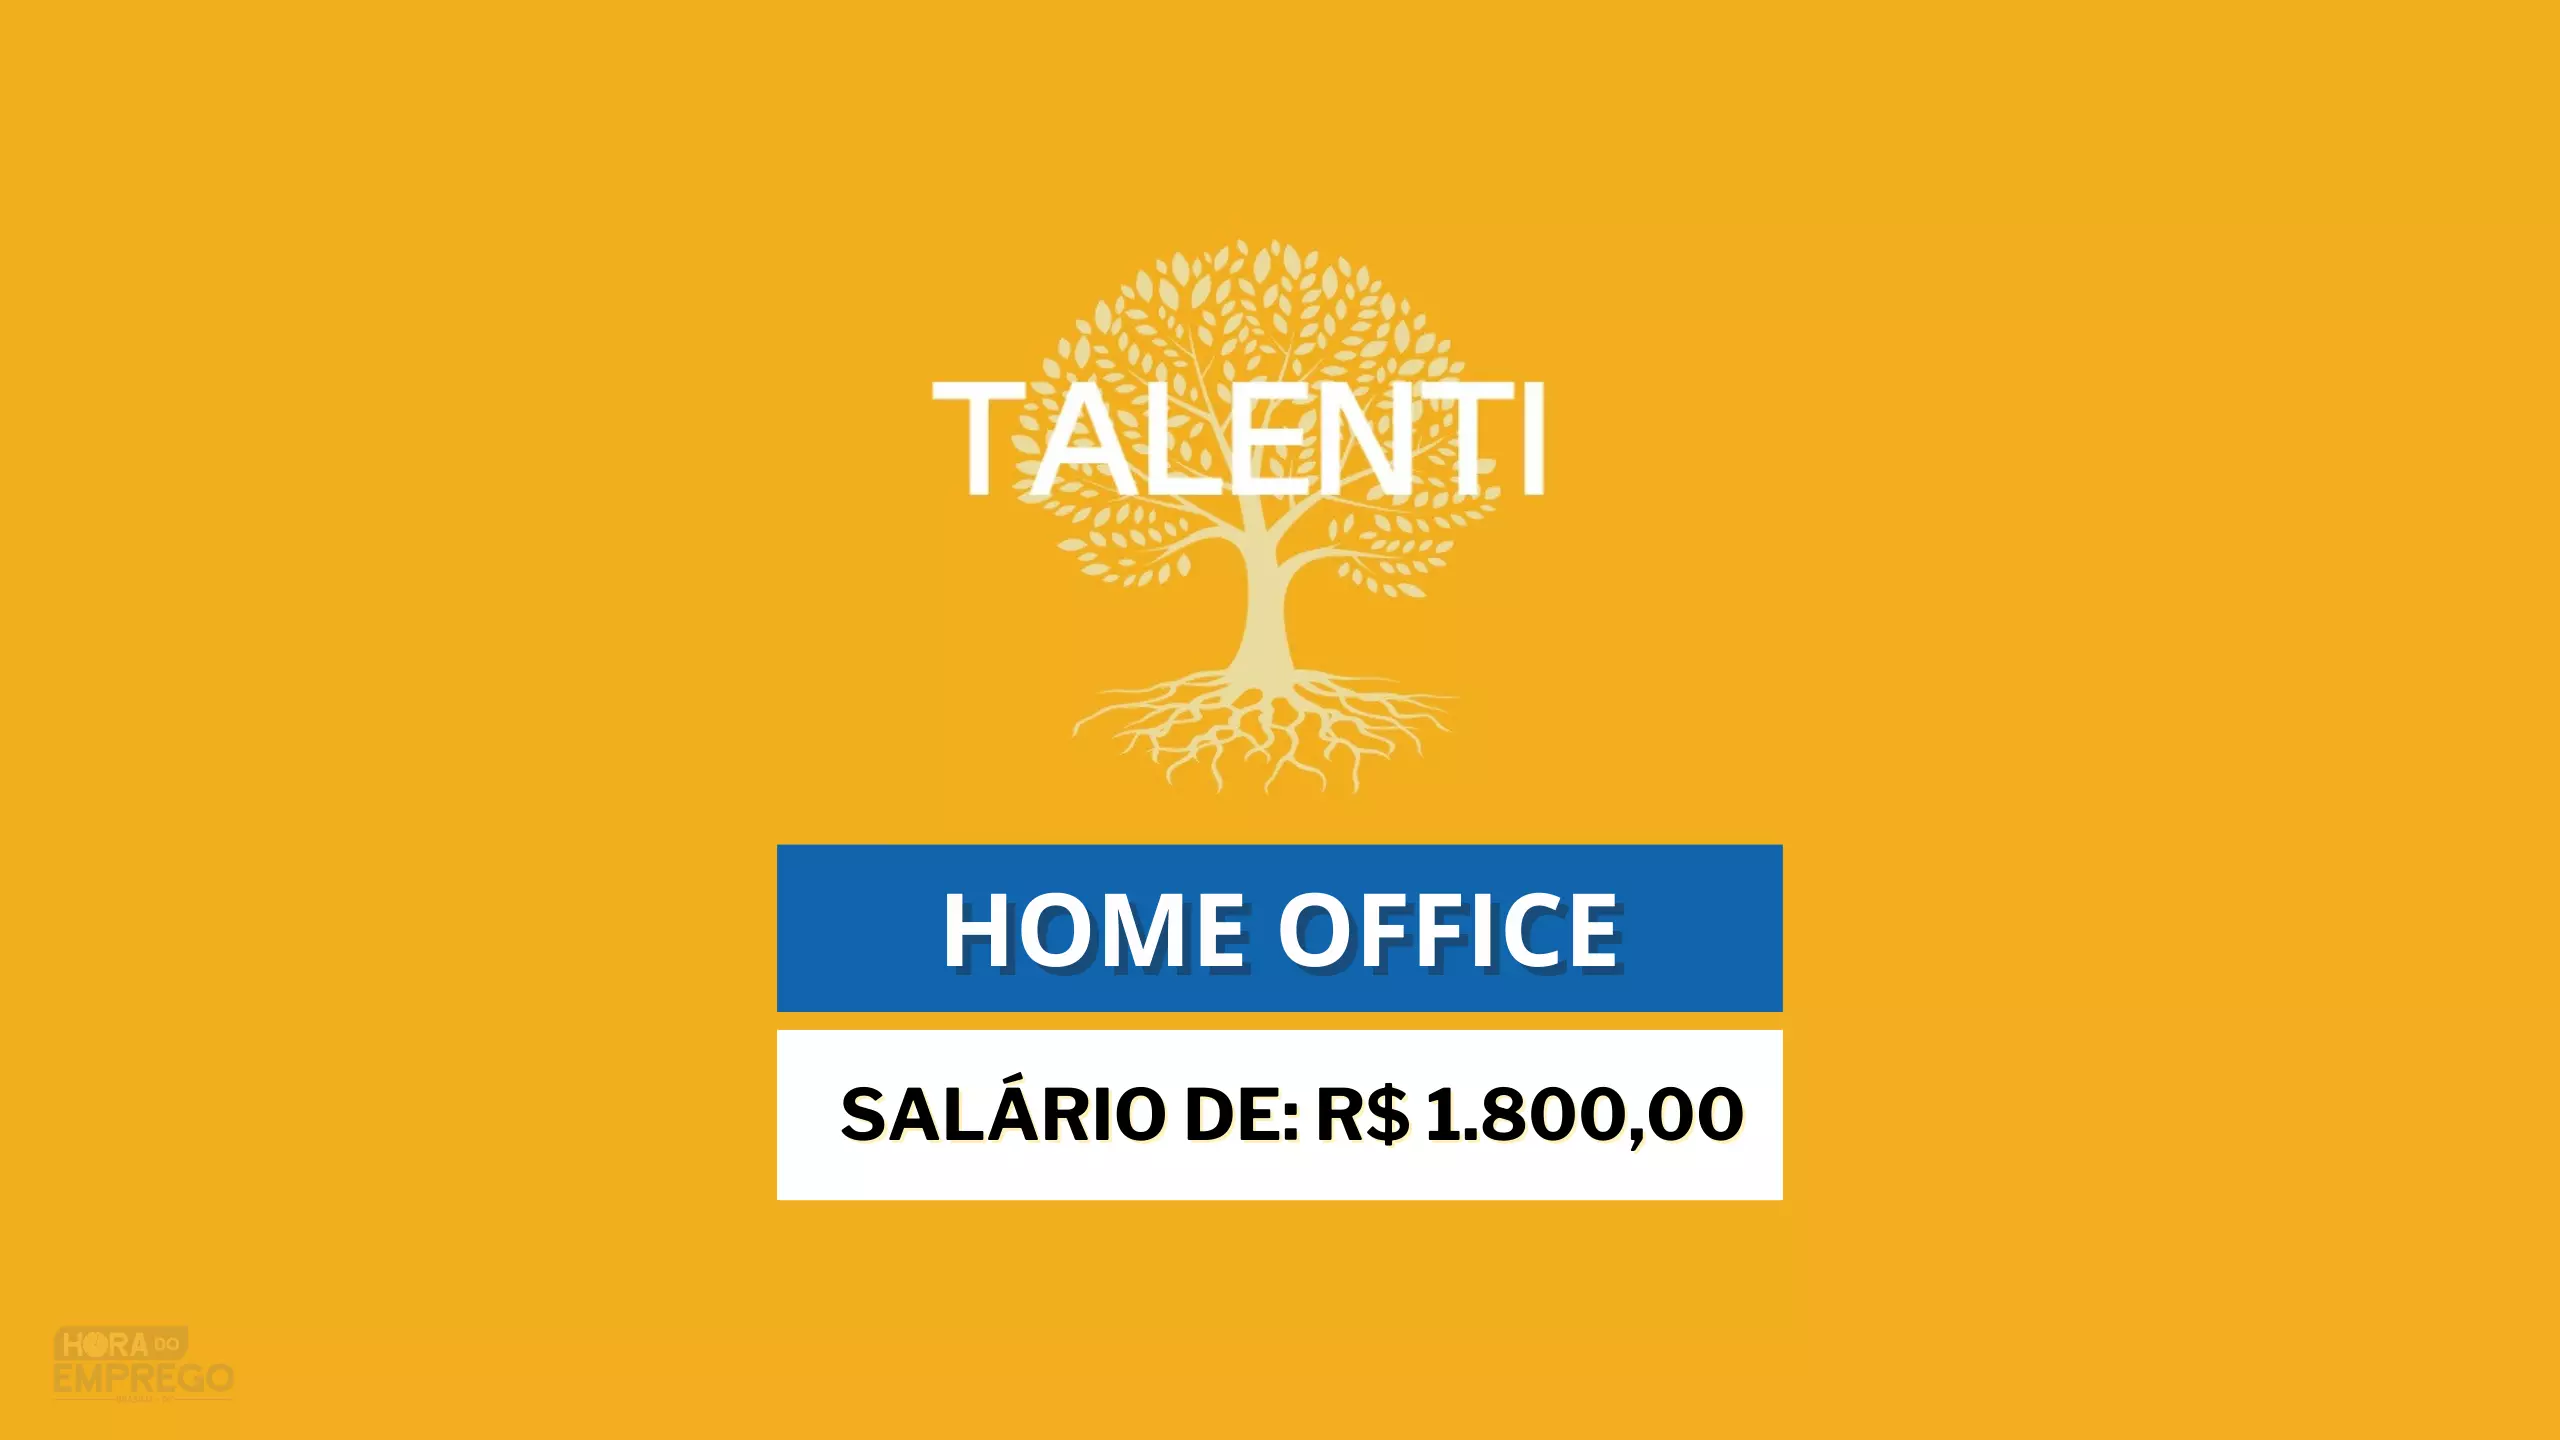 TALENTI abre vaga 100% HOME OFFICE para Assistente Financeiro com salário de R$ 1.800,00